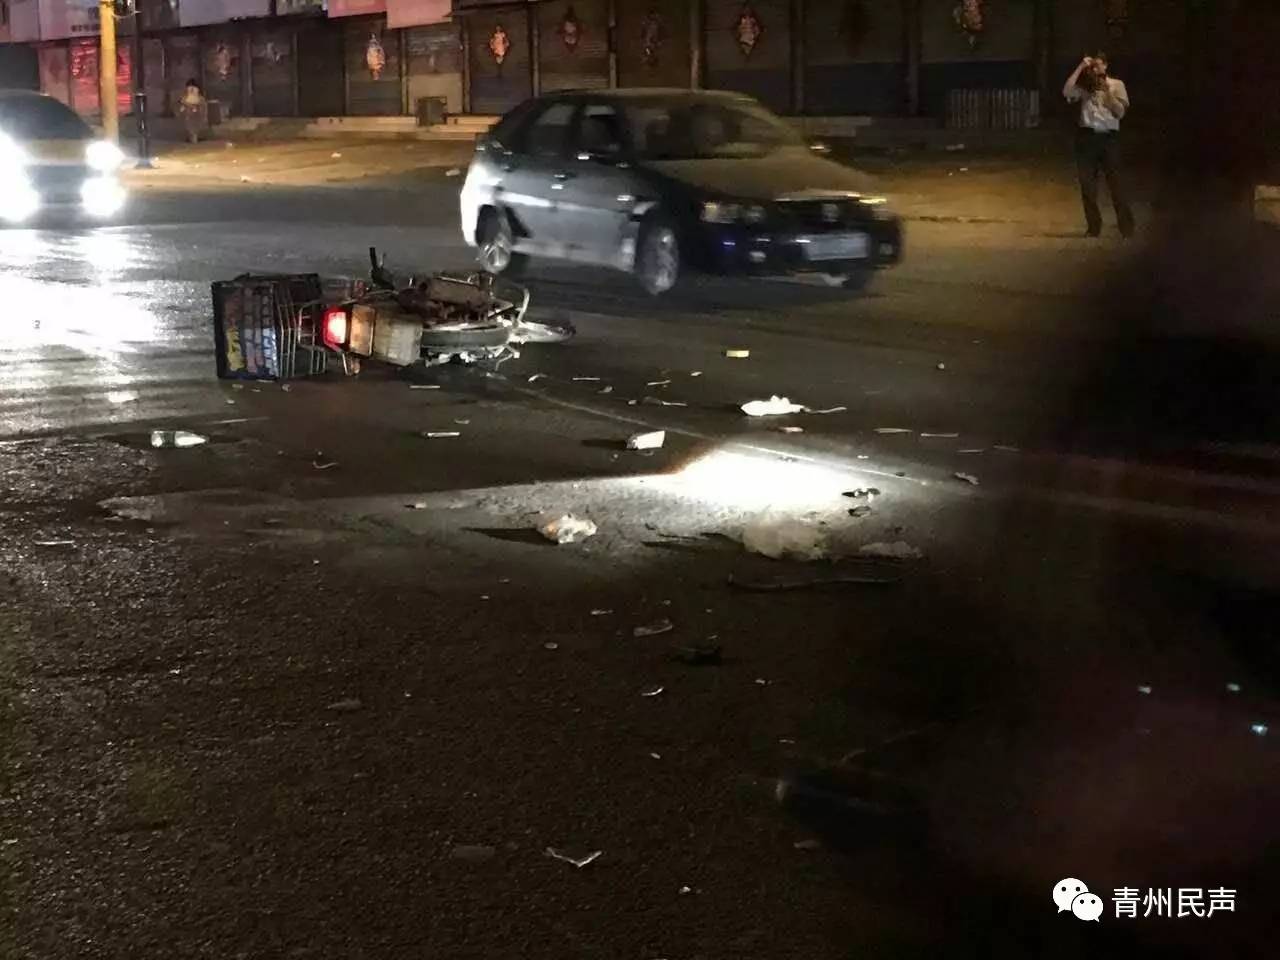 青州王府深夜发生车祸,骑摩托车的鞋都掉了,当时就